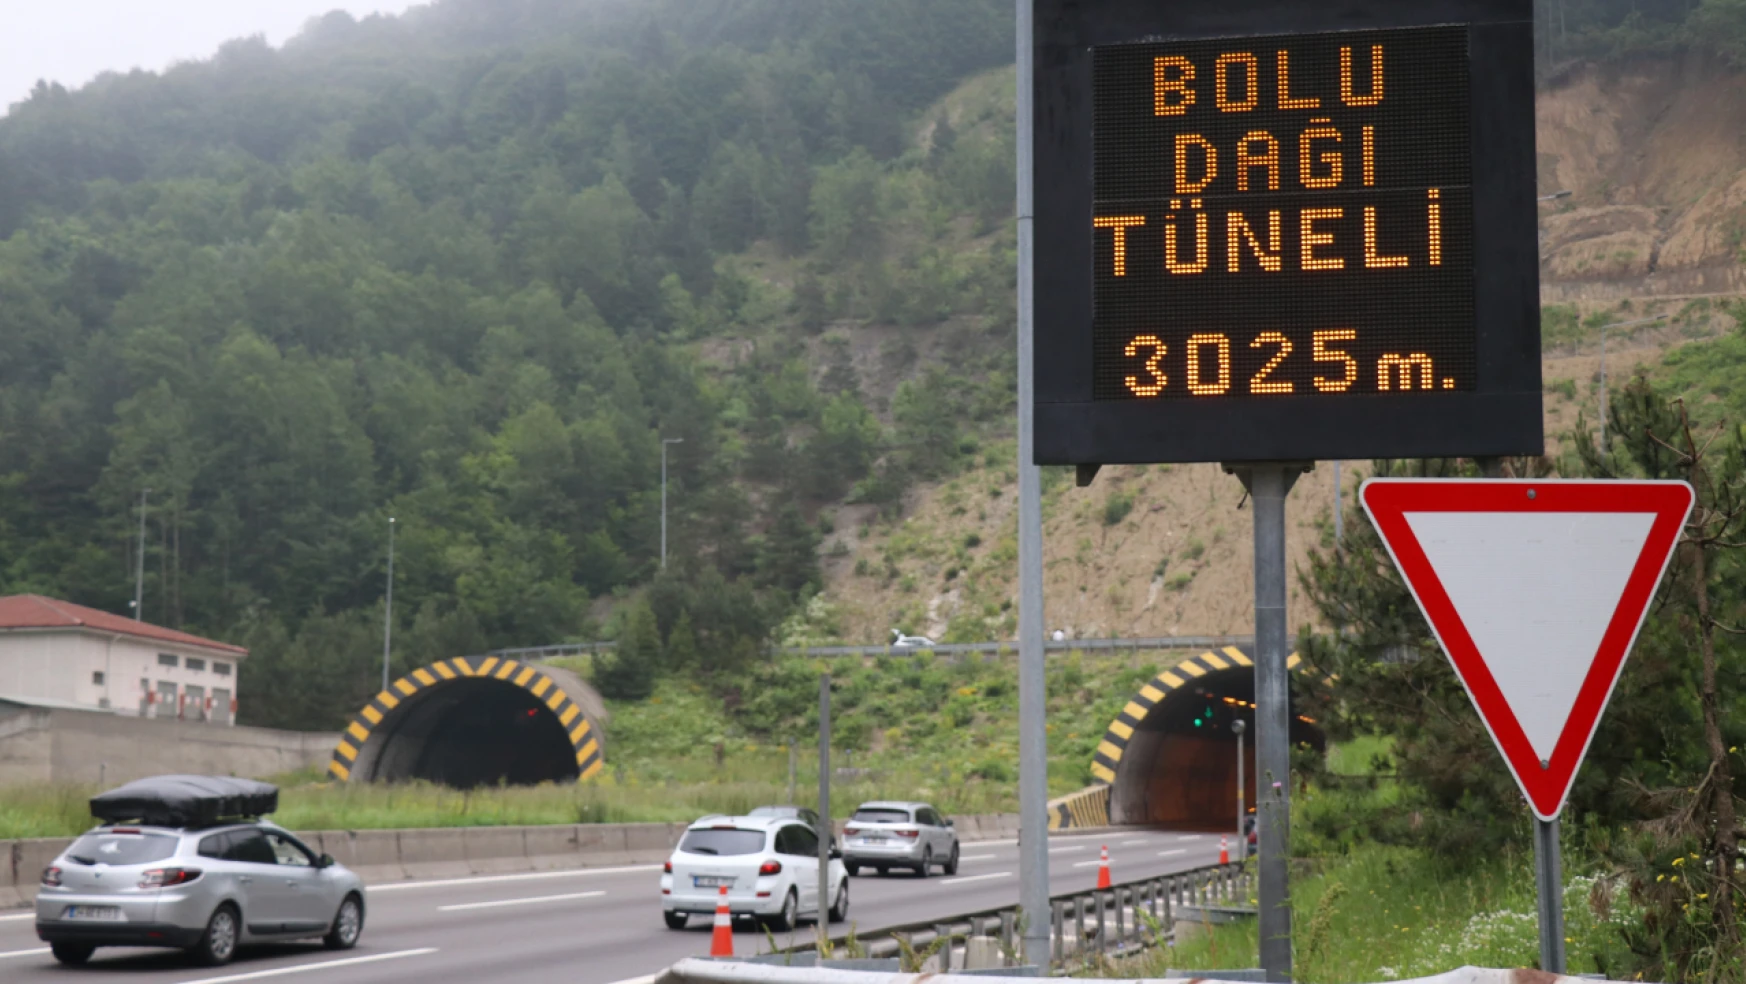 Bolu Dağı Tüneli tüpleri 70 metre uzatılacak